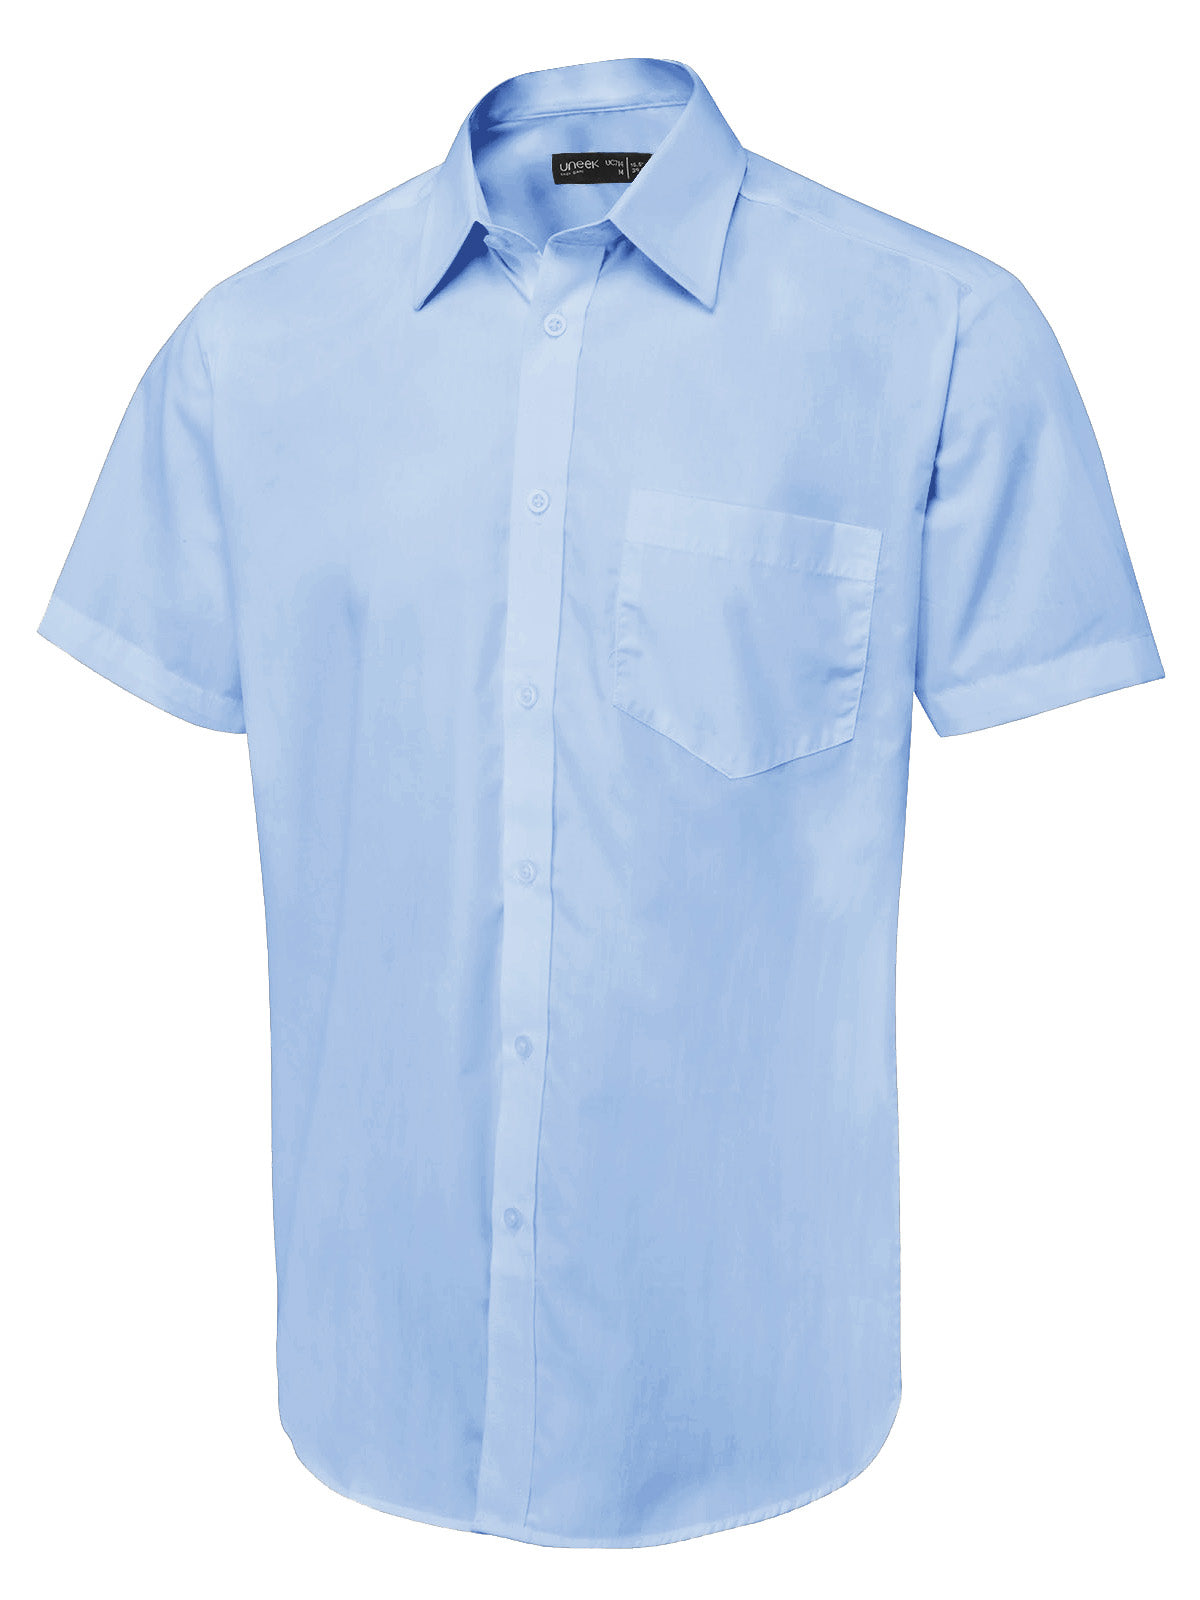 Uneek Men's Short Sleeve Poplin Shirt UC714 - Light Blue